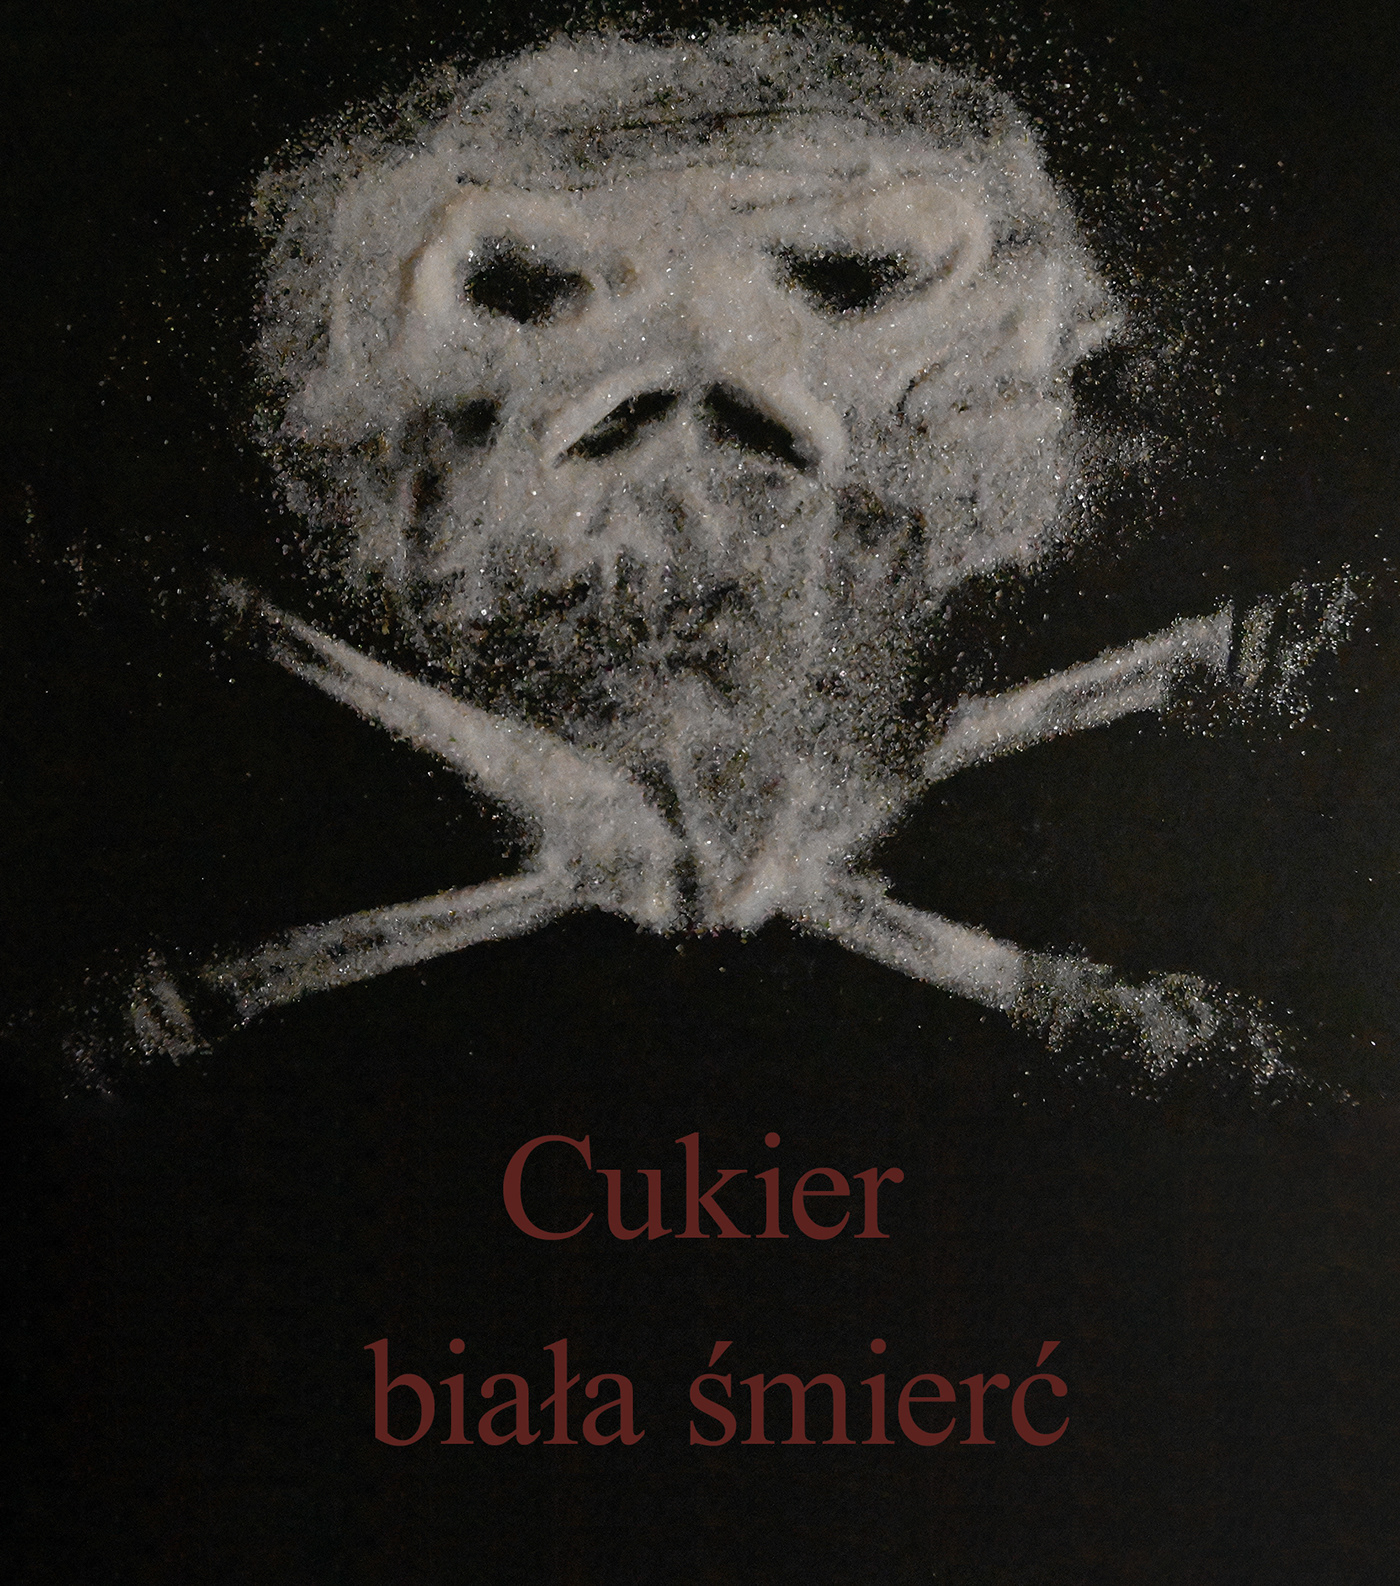 cukier Health plakat poster Poster Design Social Issues Social Poster sugar sugar skull